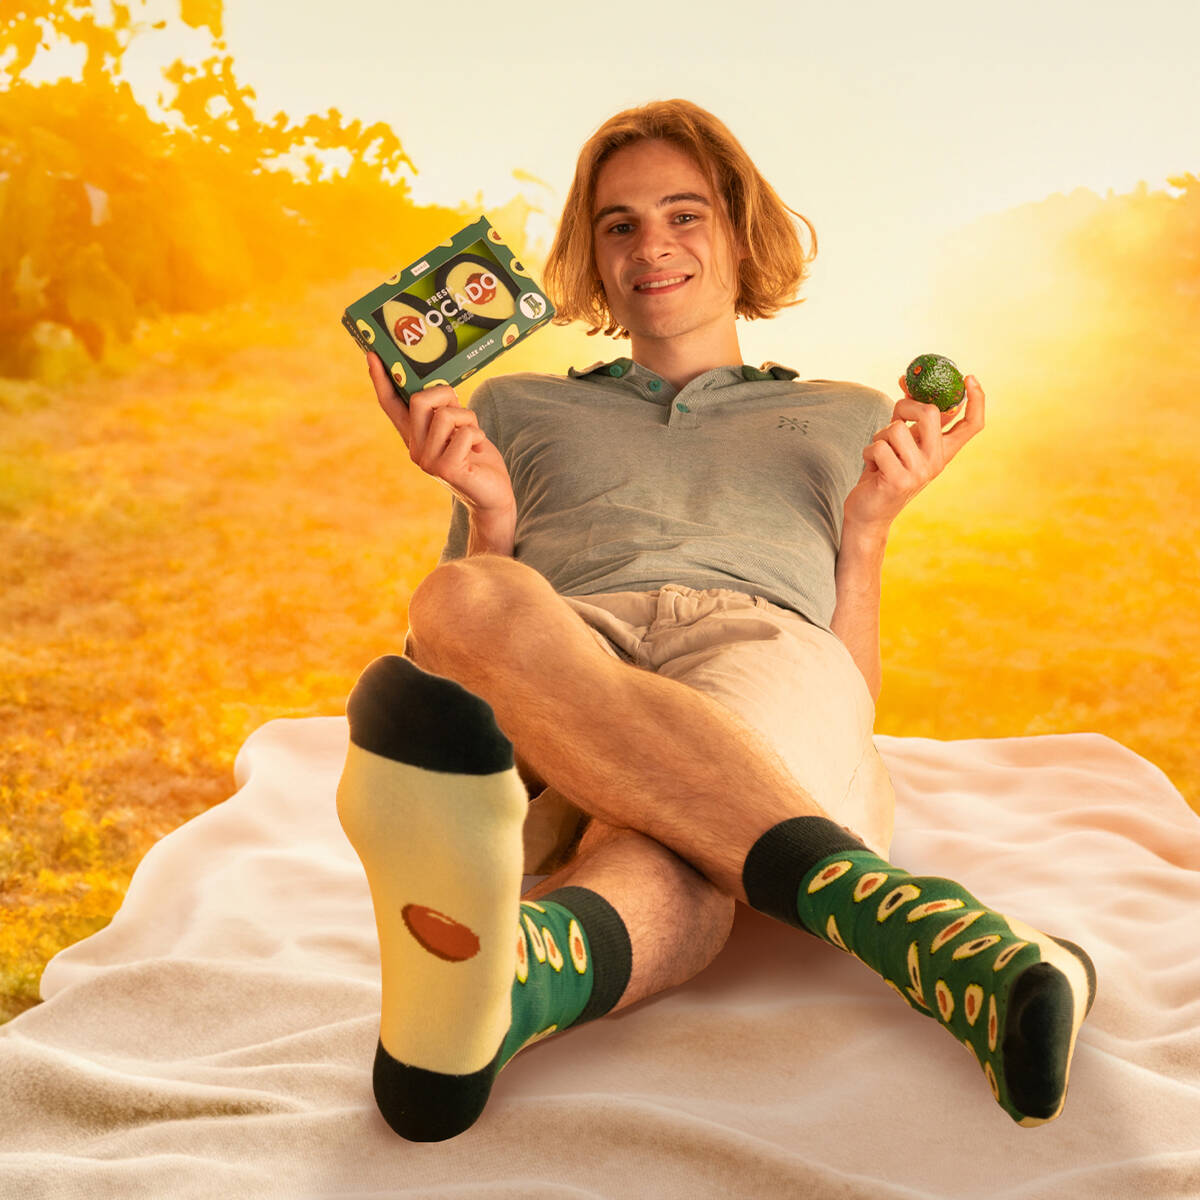 Calzini da donna, SOXO da uomo, Avocado in scatola, idea regalo  divertente, calzini divertenti per lei, per lui Unisex - 10,99 €